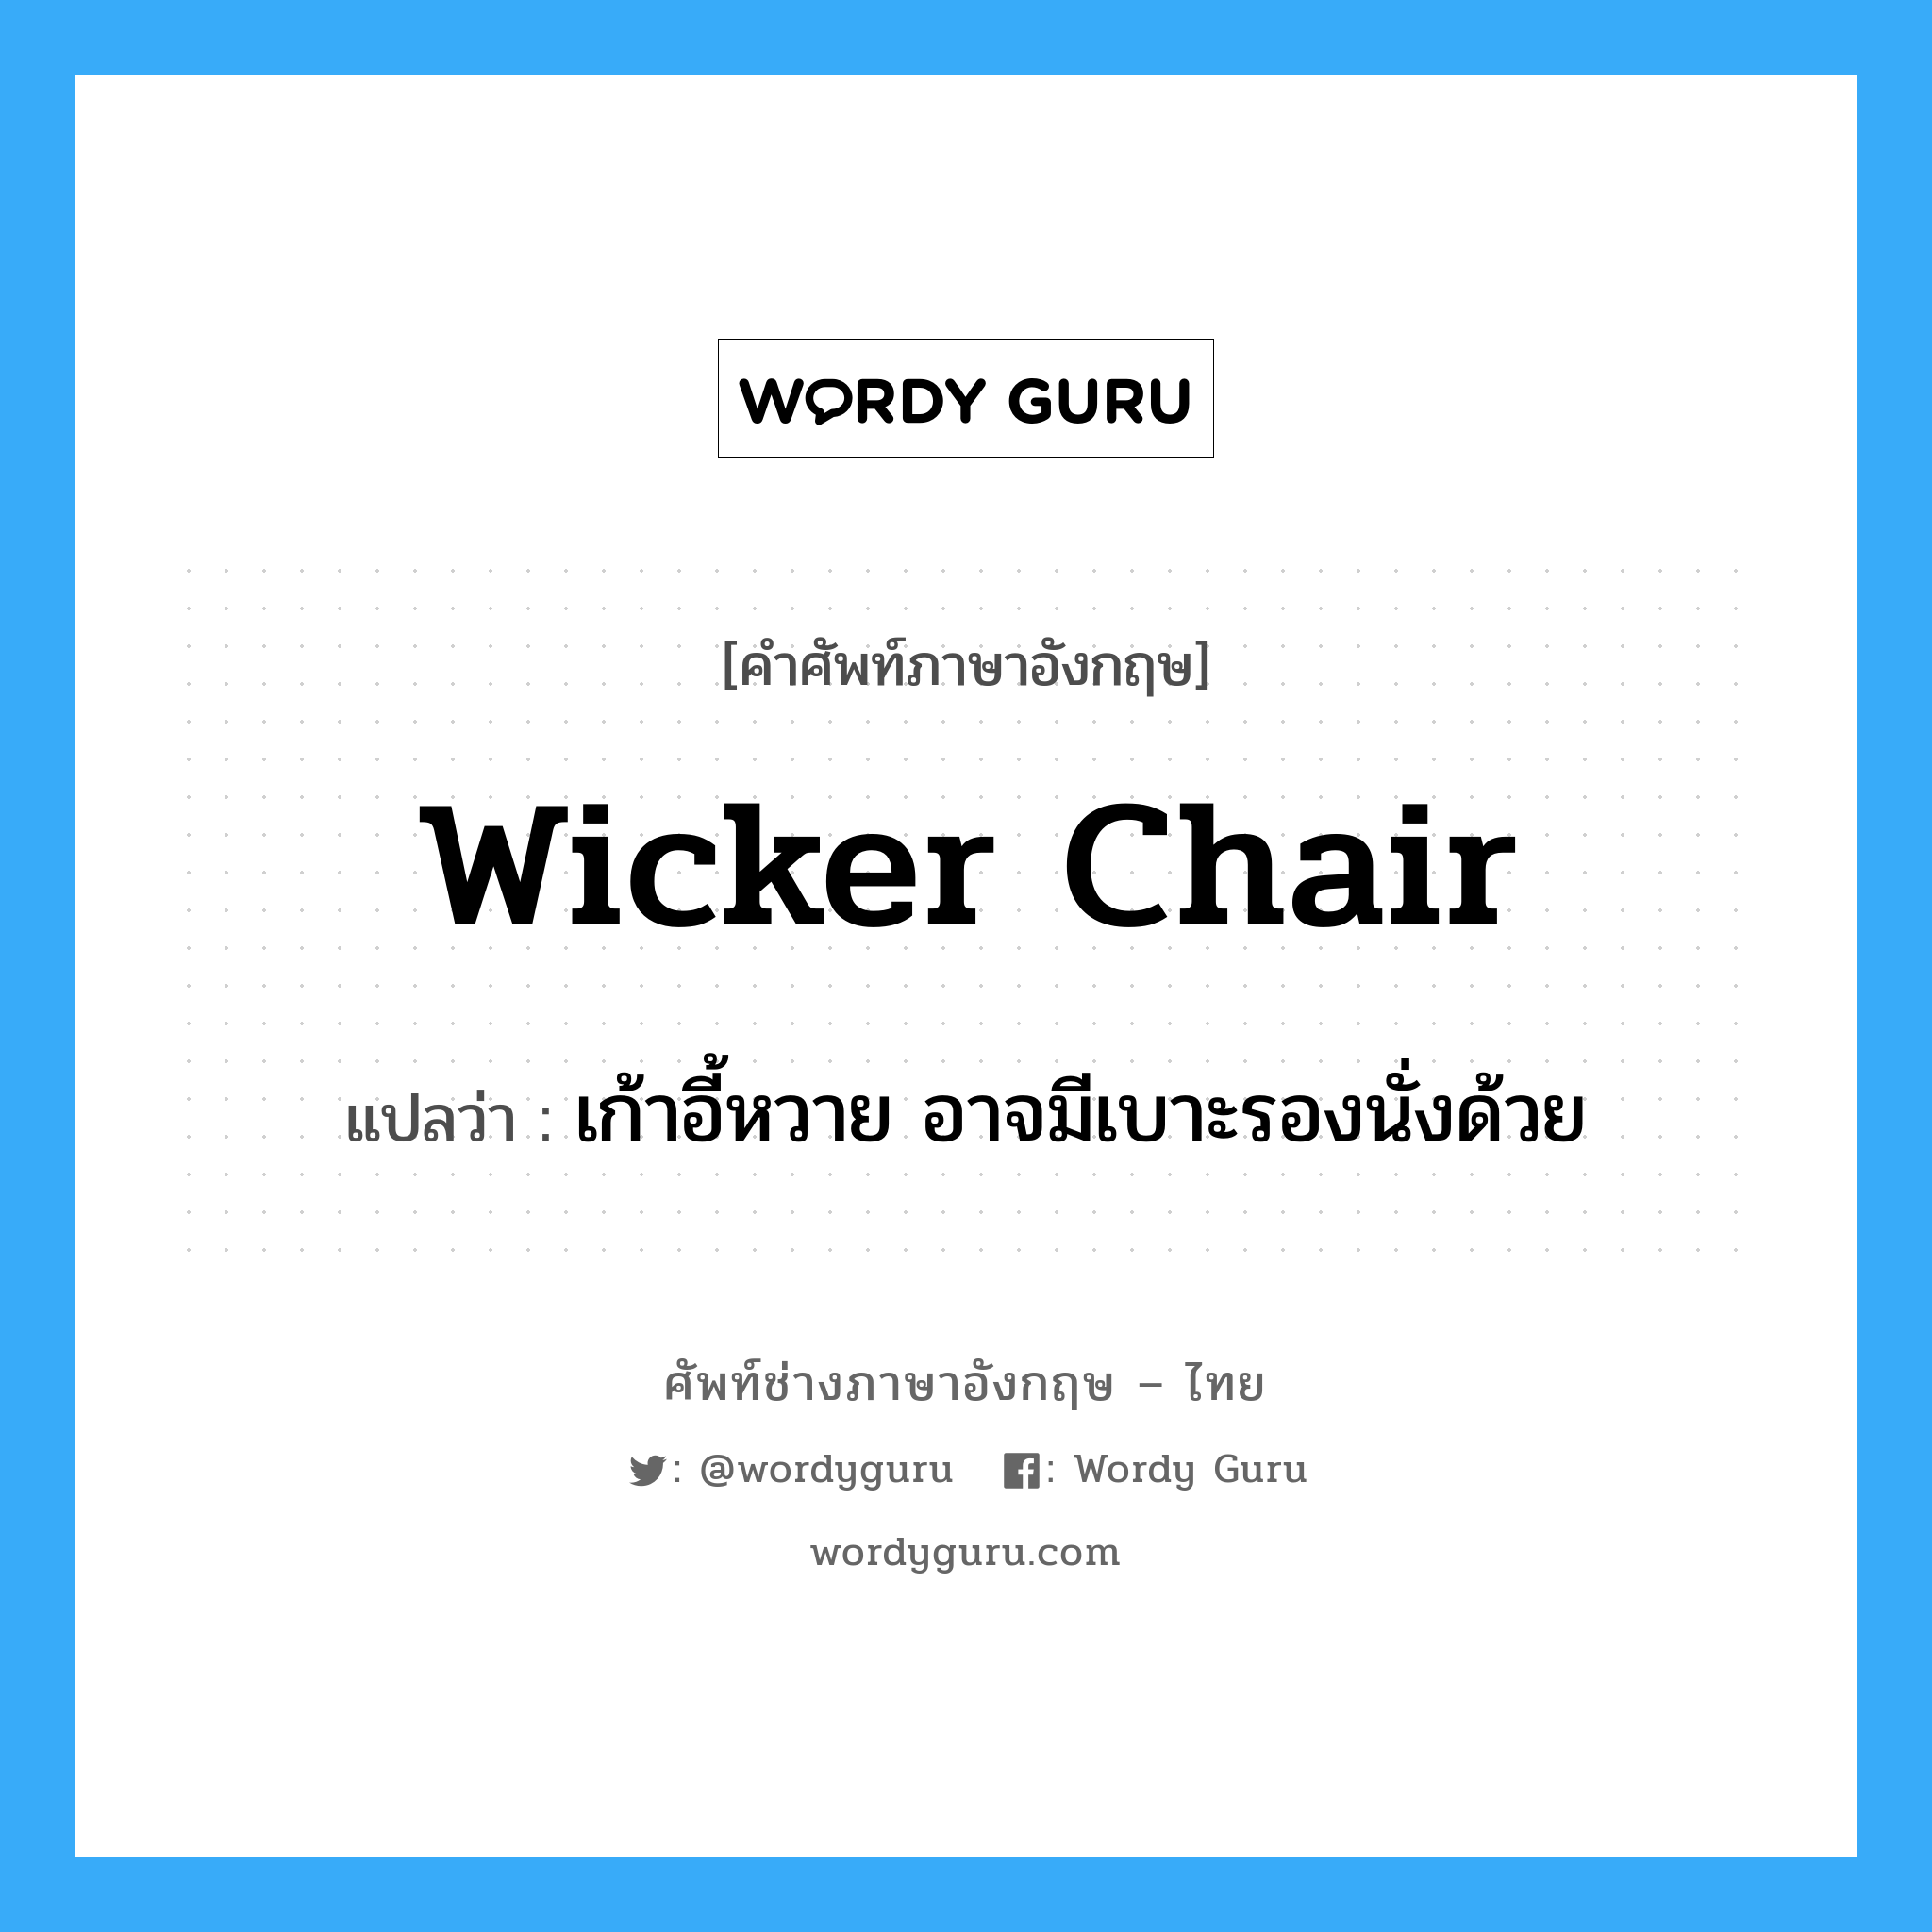 เก้าอี้หวาย อาจมีเบาะรองนั่งด้วย ภาษาอังกฤษ?, คำศัพท์ช่างภาษาอังกฤษ - ไทย เก้าอี้หวาย อาจมีเบาะรองนั่งด้วย คำศัพท์ภาษาอังกฤษ เก้าอี้หวาย อาจมีเบาะรองนั่งด้วย แปลว่า wicker chair